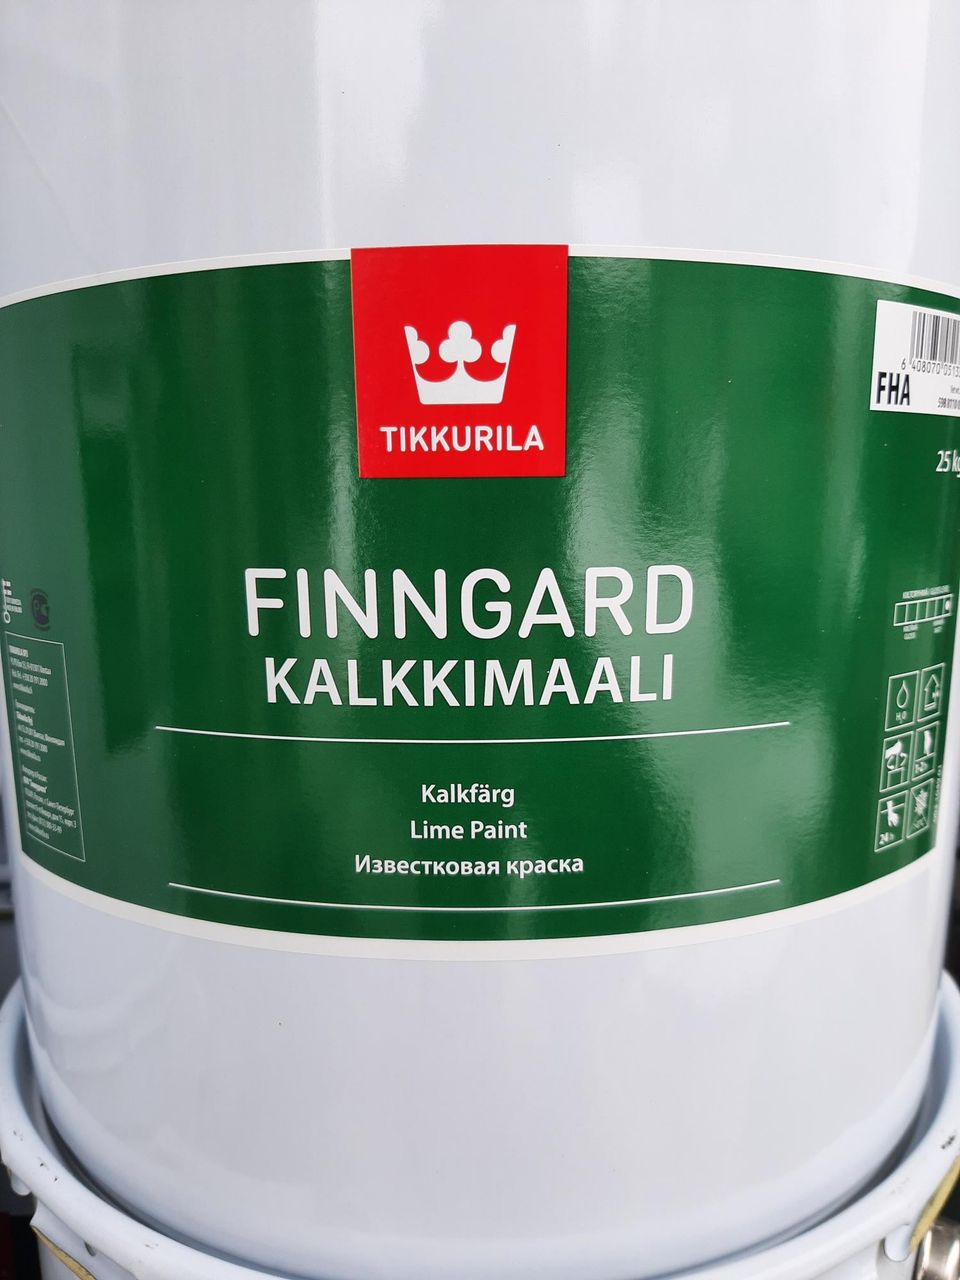 Finngard kalkkimaali